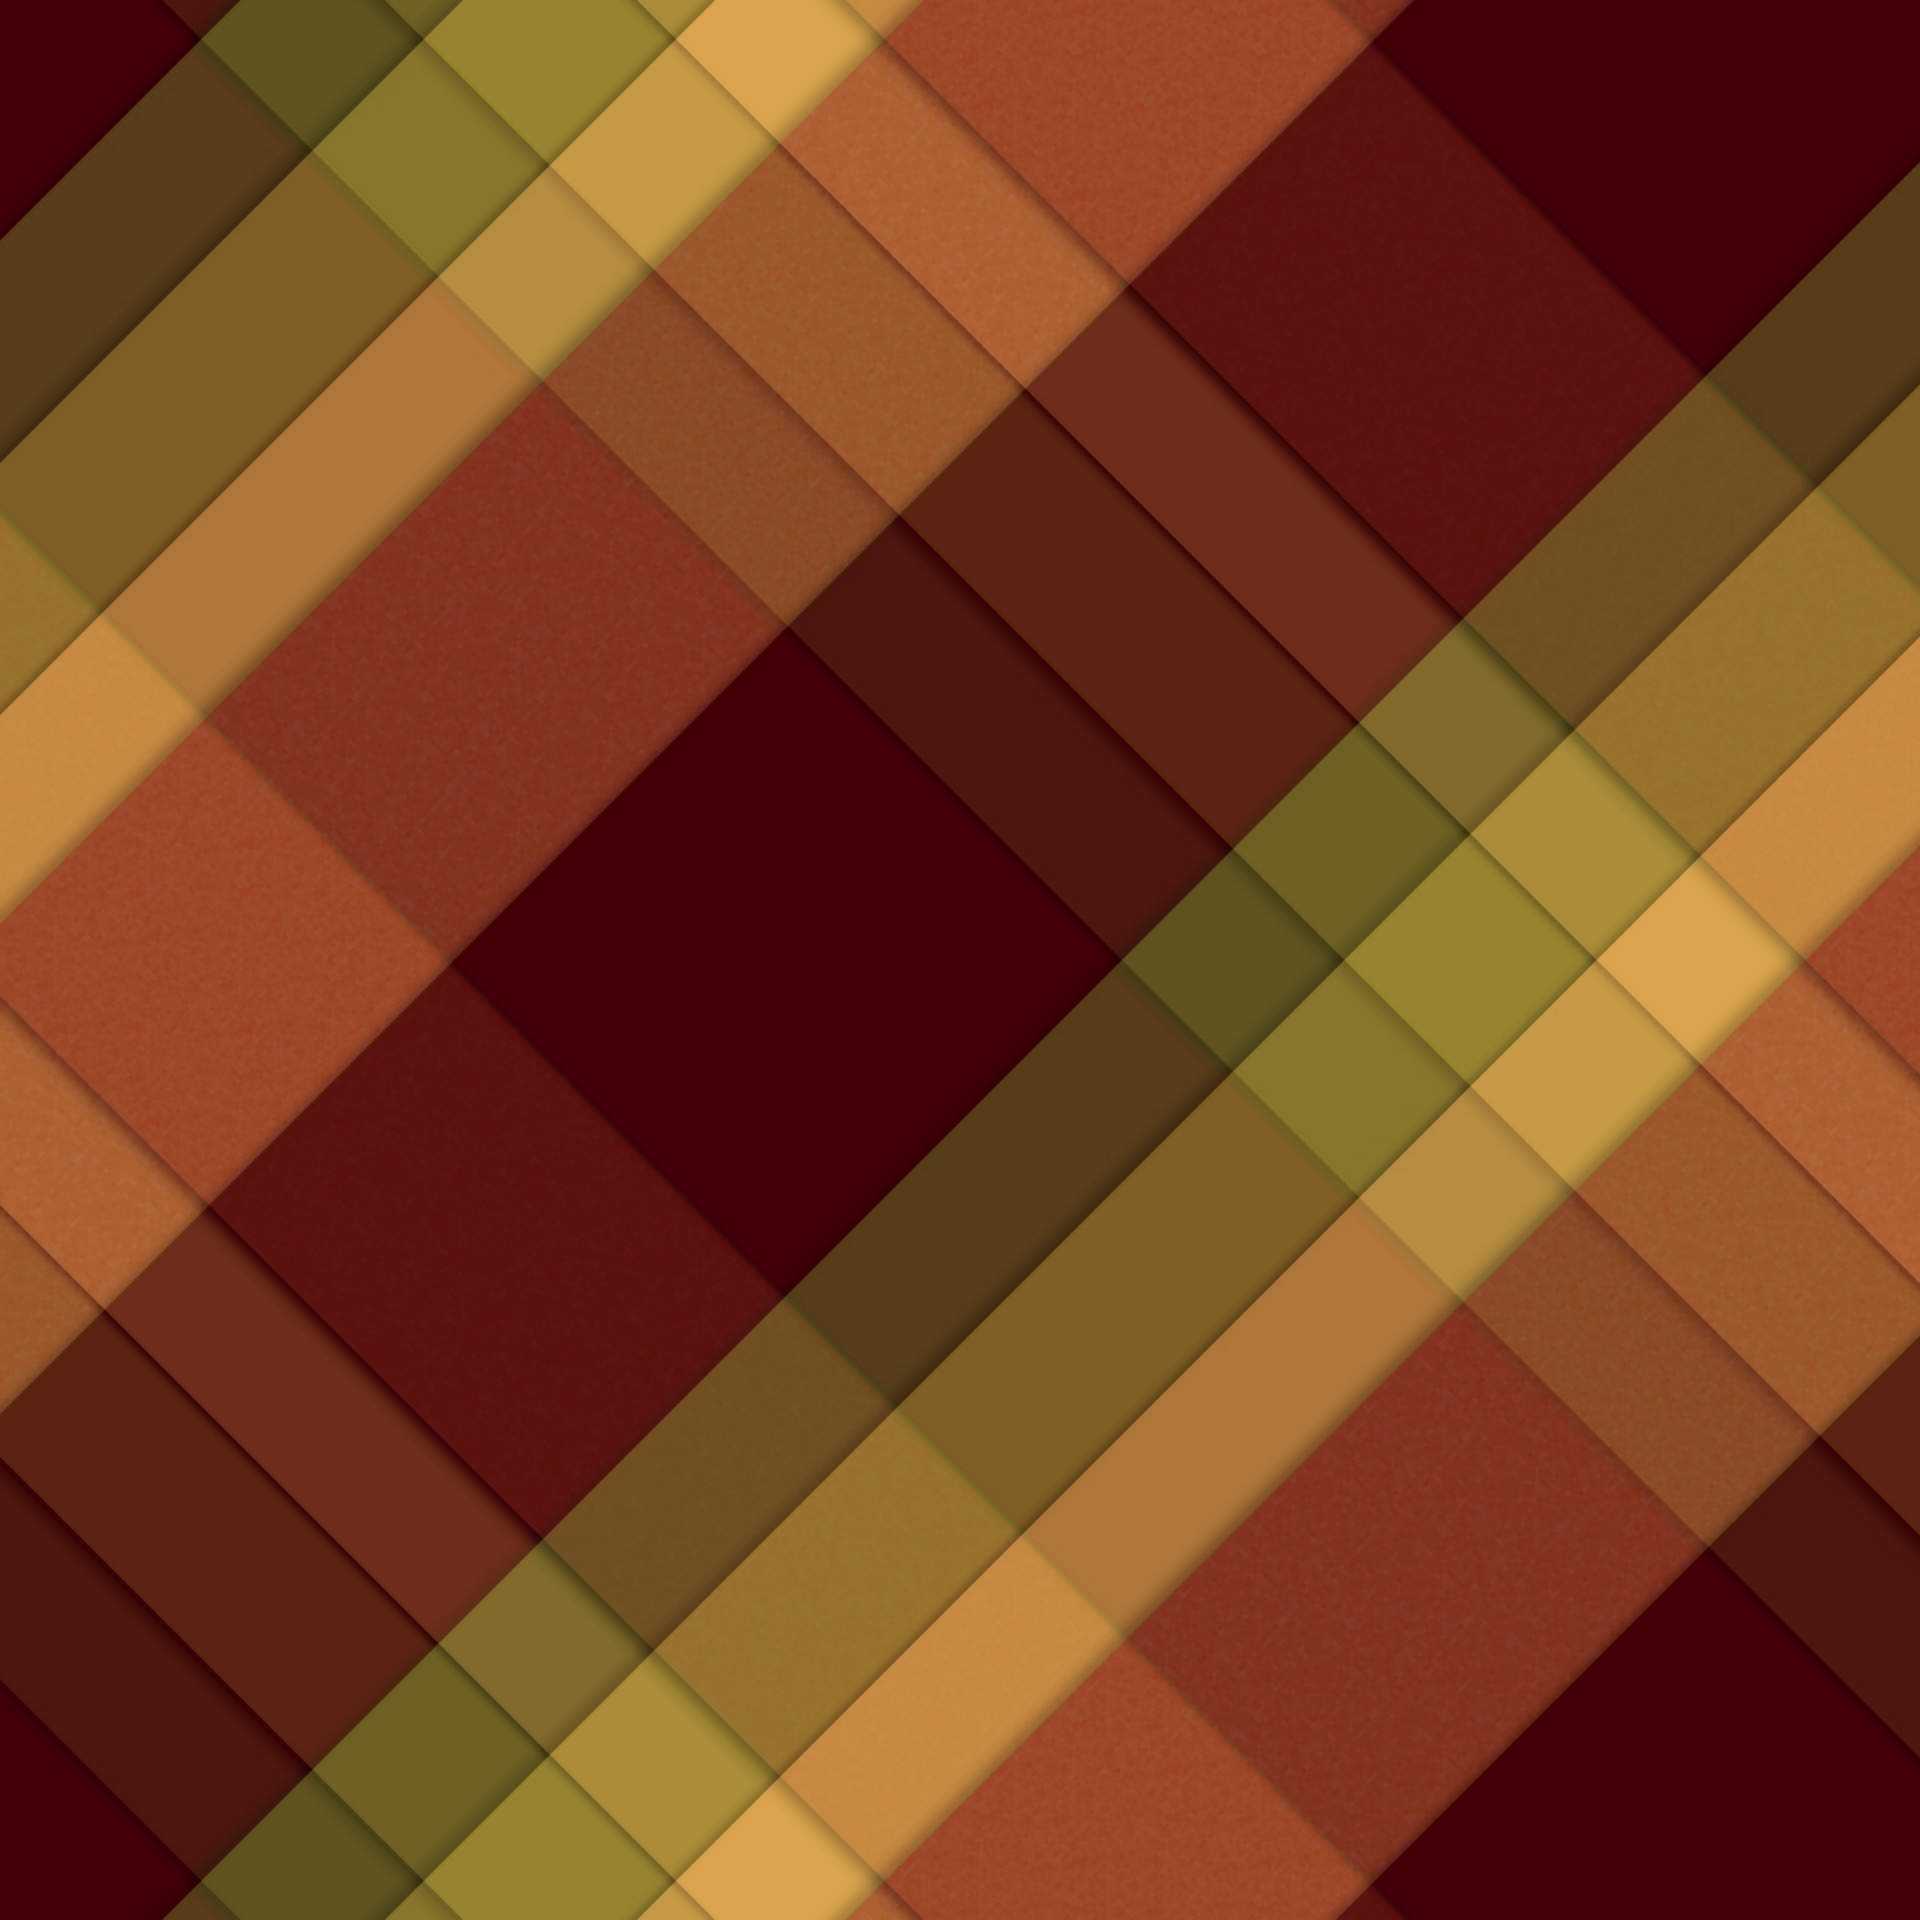 wallpaper with brown tartan pattern